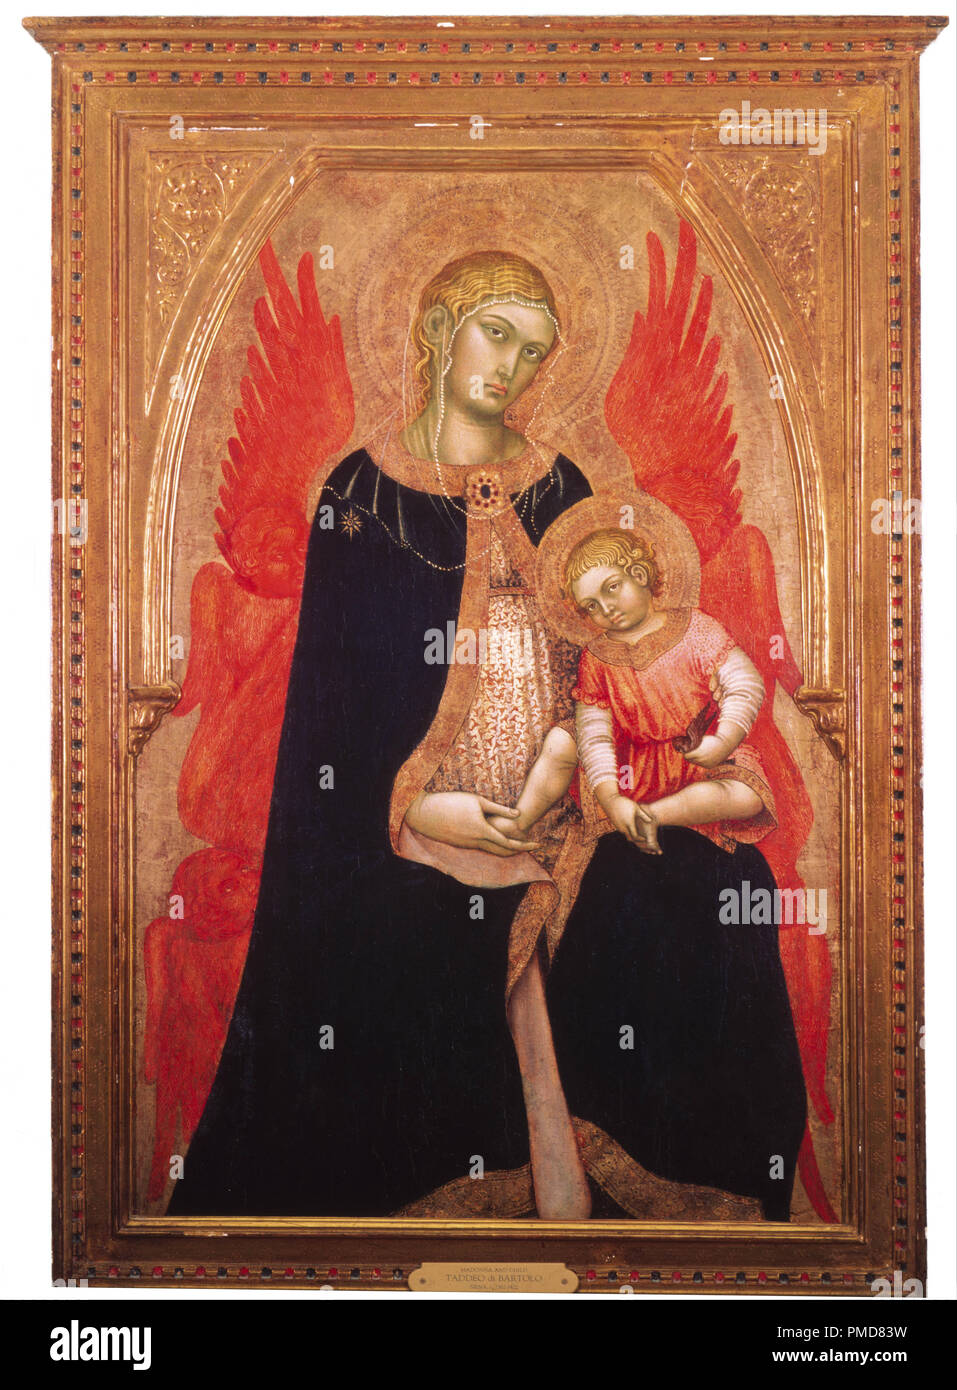 La Madonna e il bambino. Data/Periodo: 1410. Tempera su pannello. Autore: Taddeo di Bartolo. Foto Stock